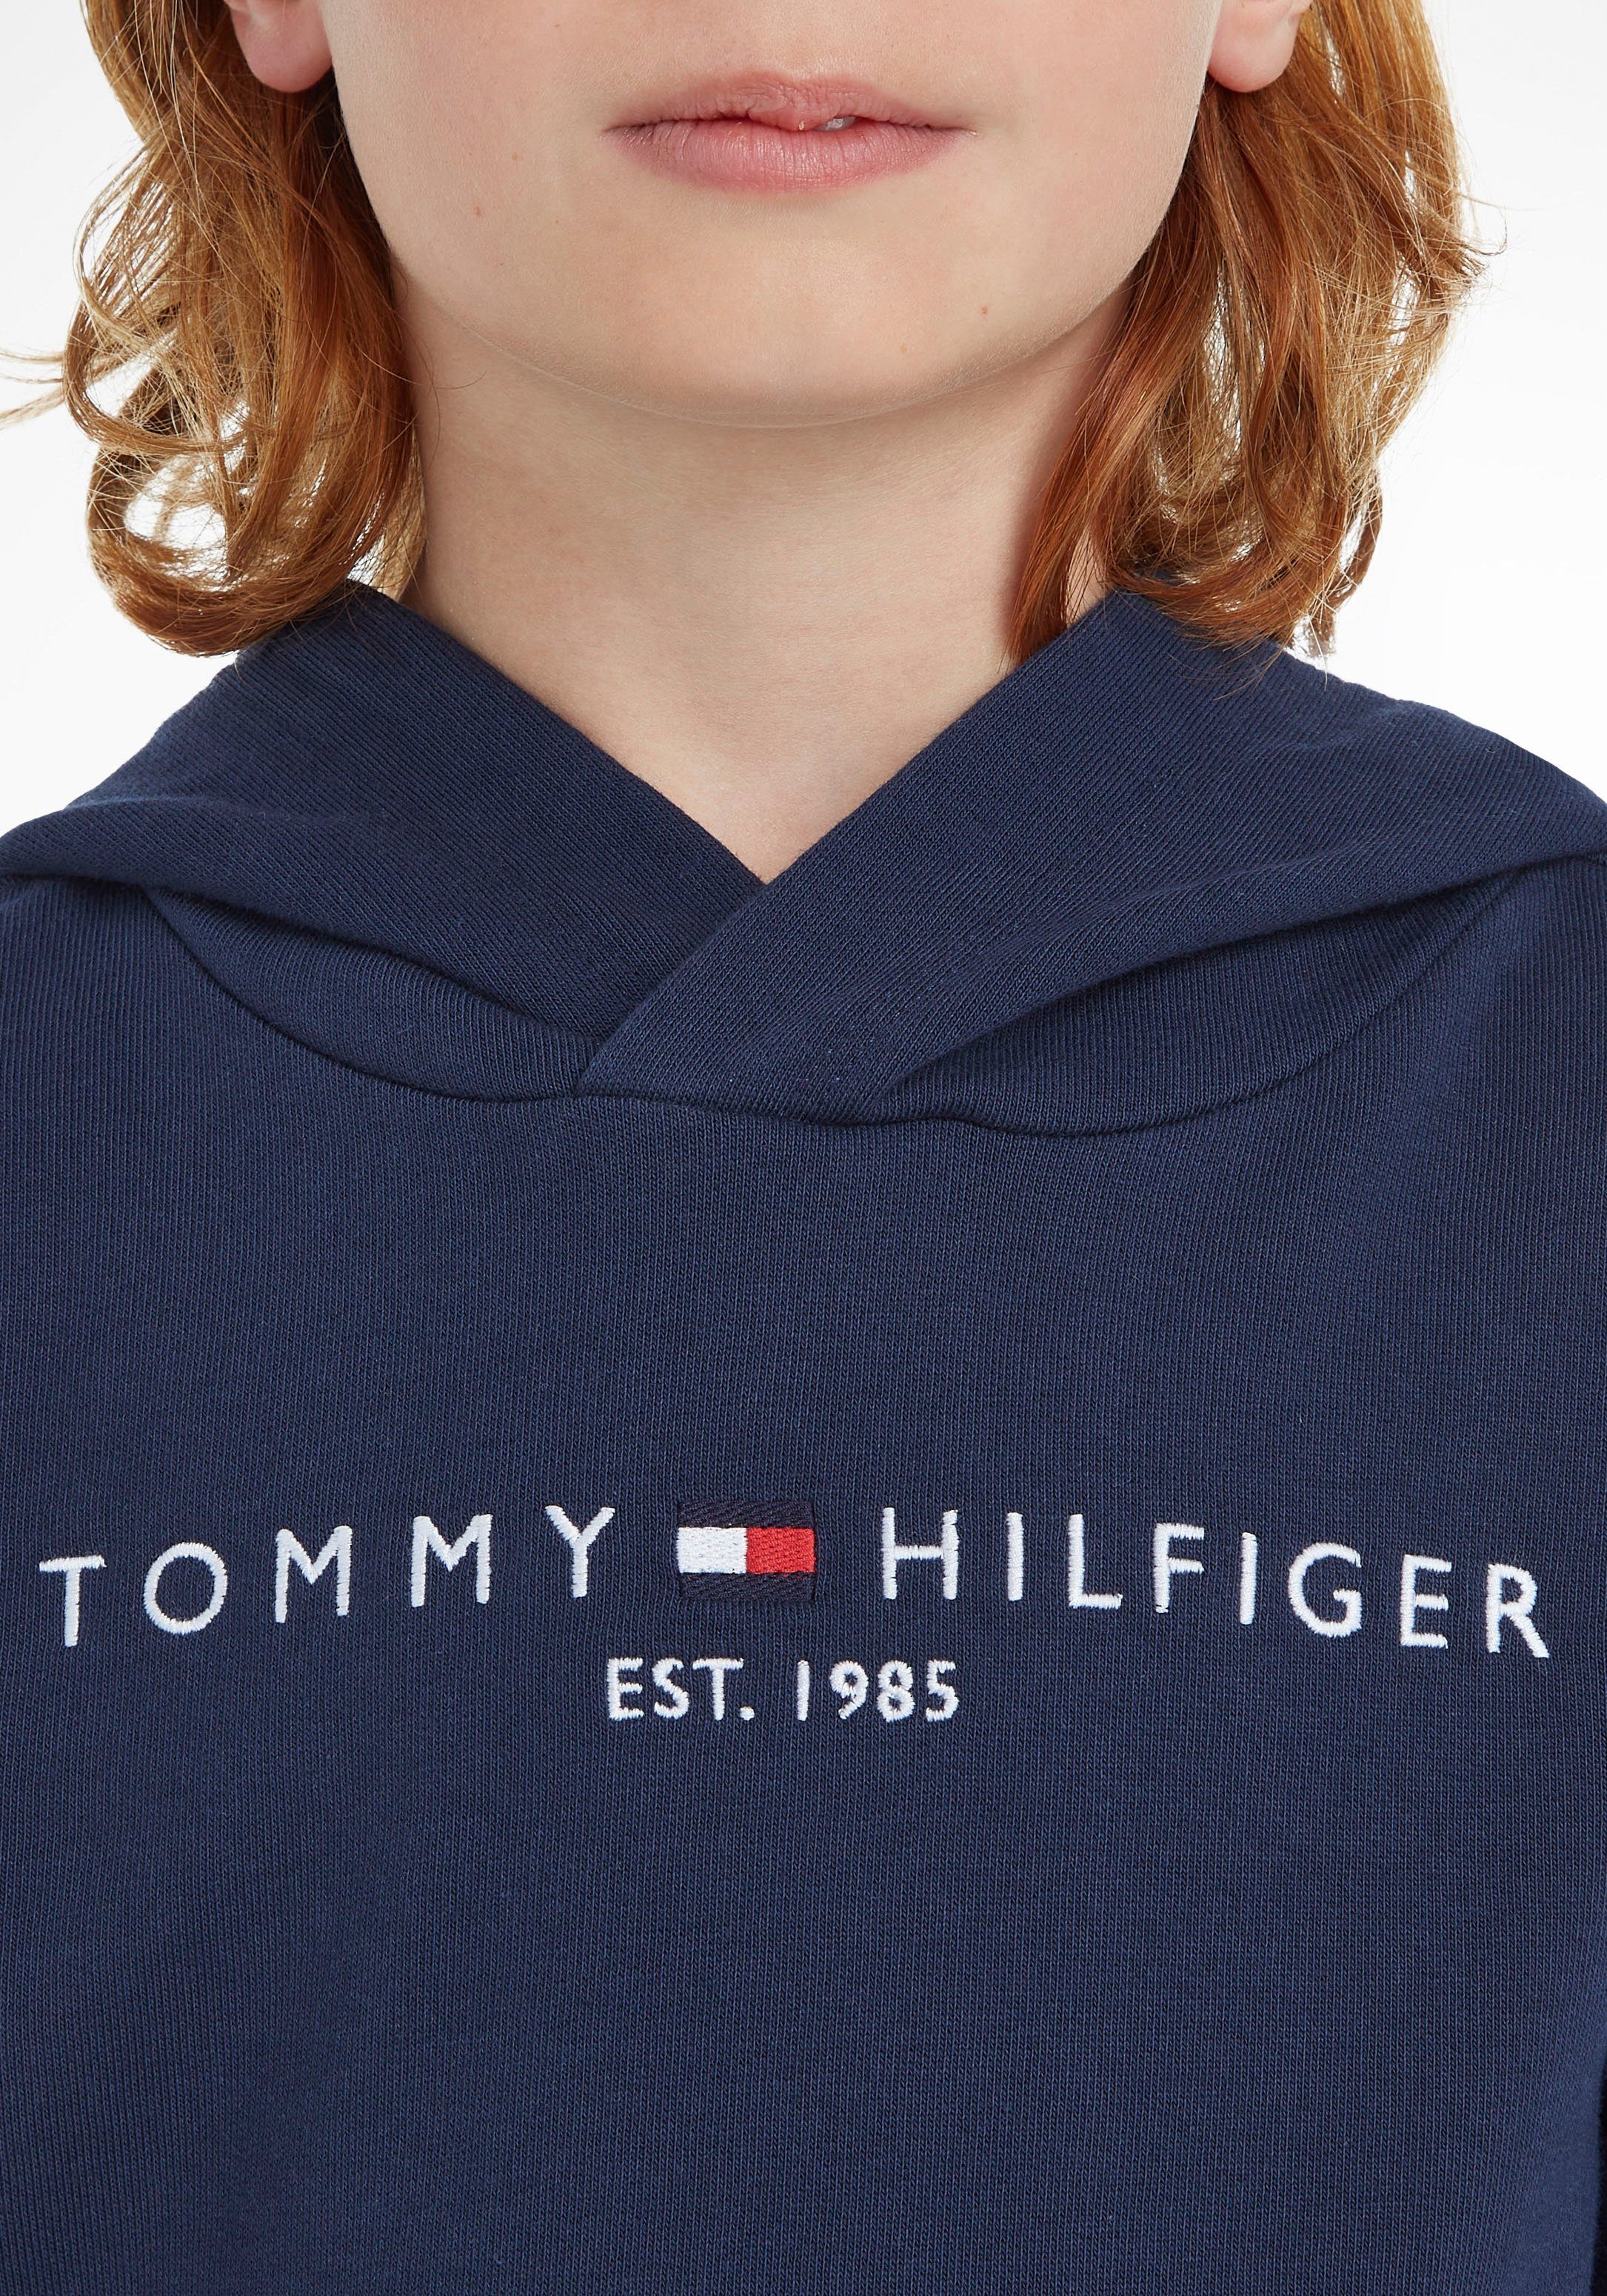 Tommy Hilfiger ESSENTIAL Kapuzensweatshirt Kinder MiniMe,für Junior und Kids Jungen Mädchen HOODIE